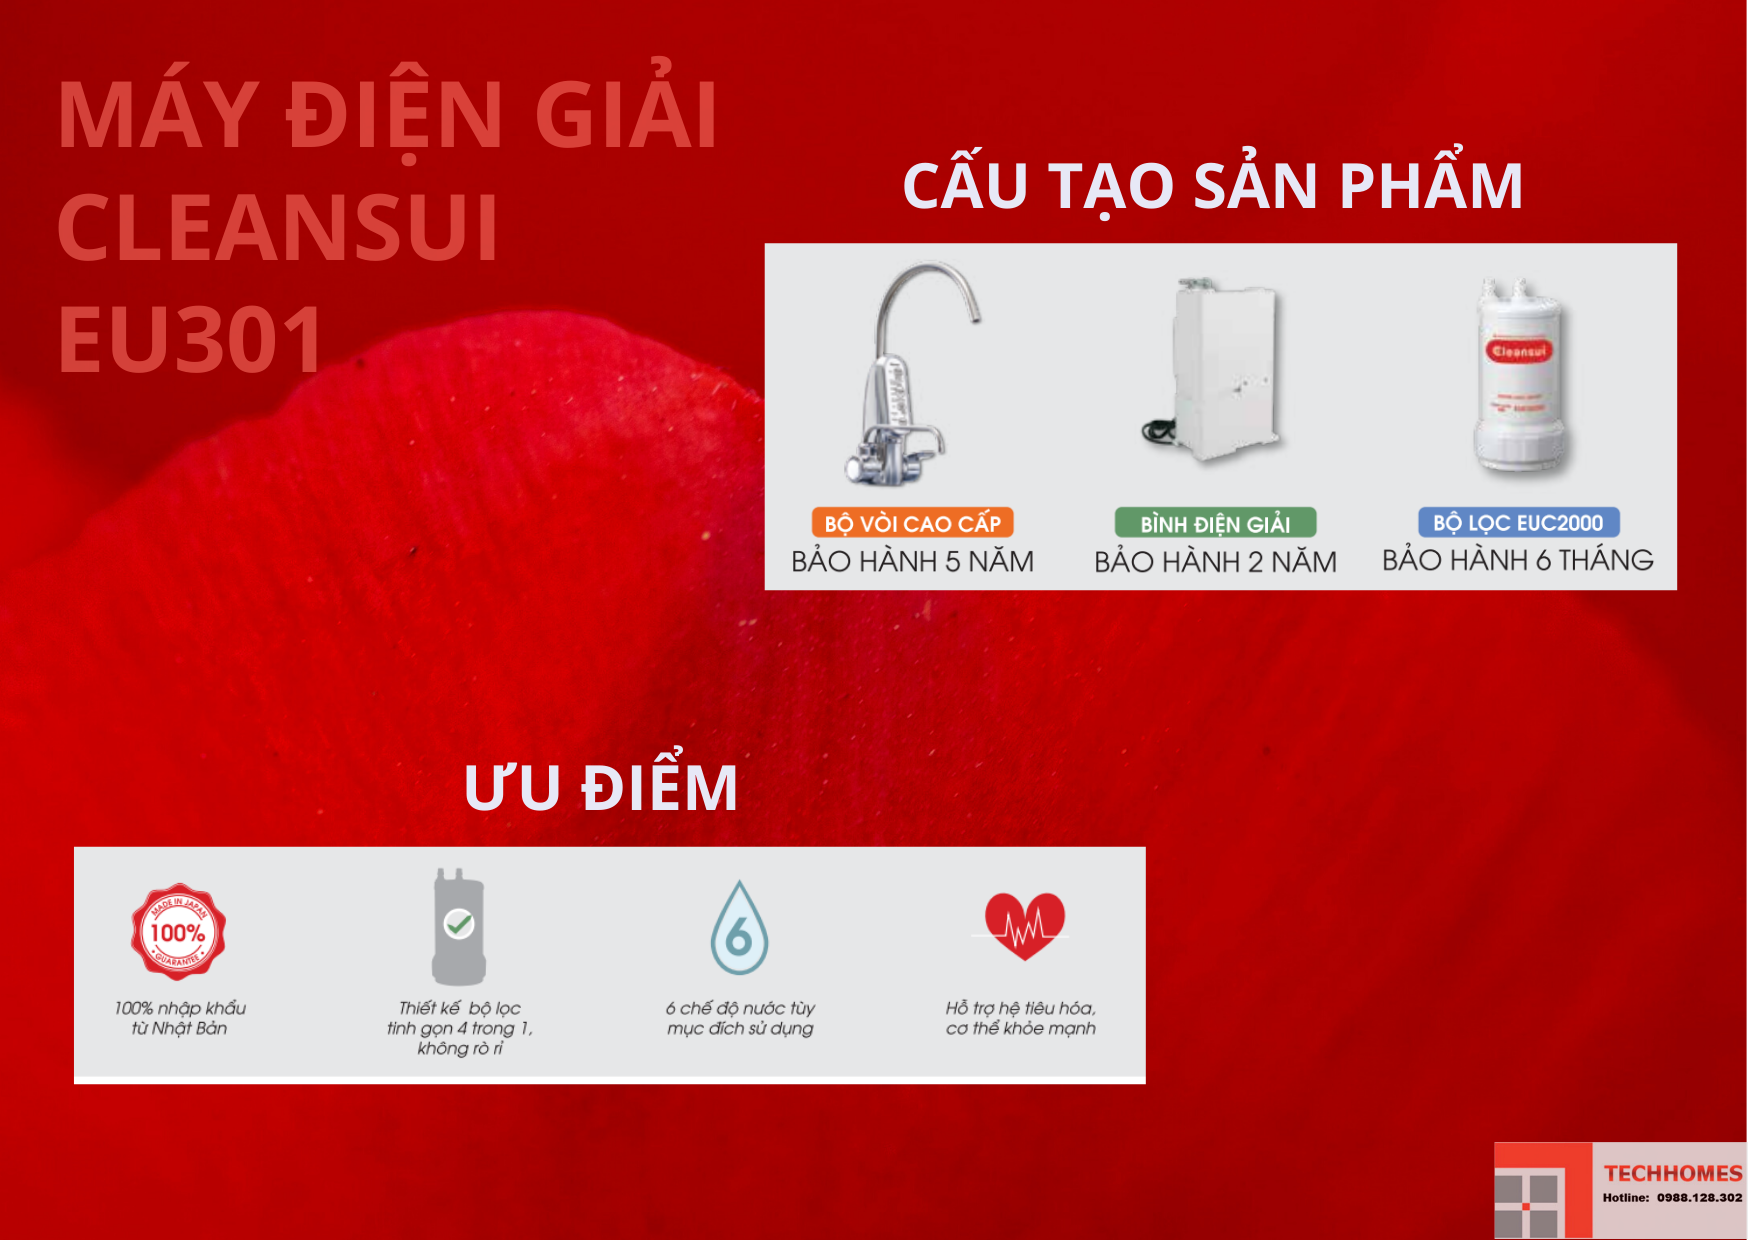 Đại lý Thiết bị lọc nước Mitsubishi Cleansui Việt Nam giá tốt nhất